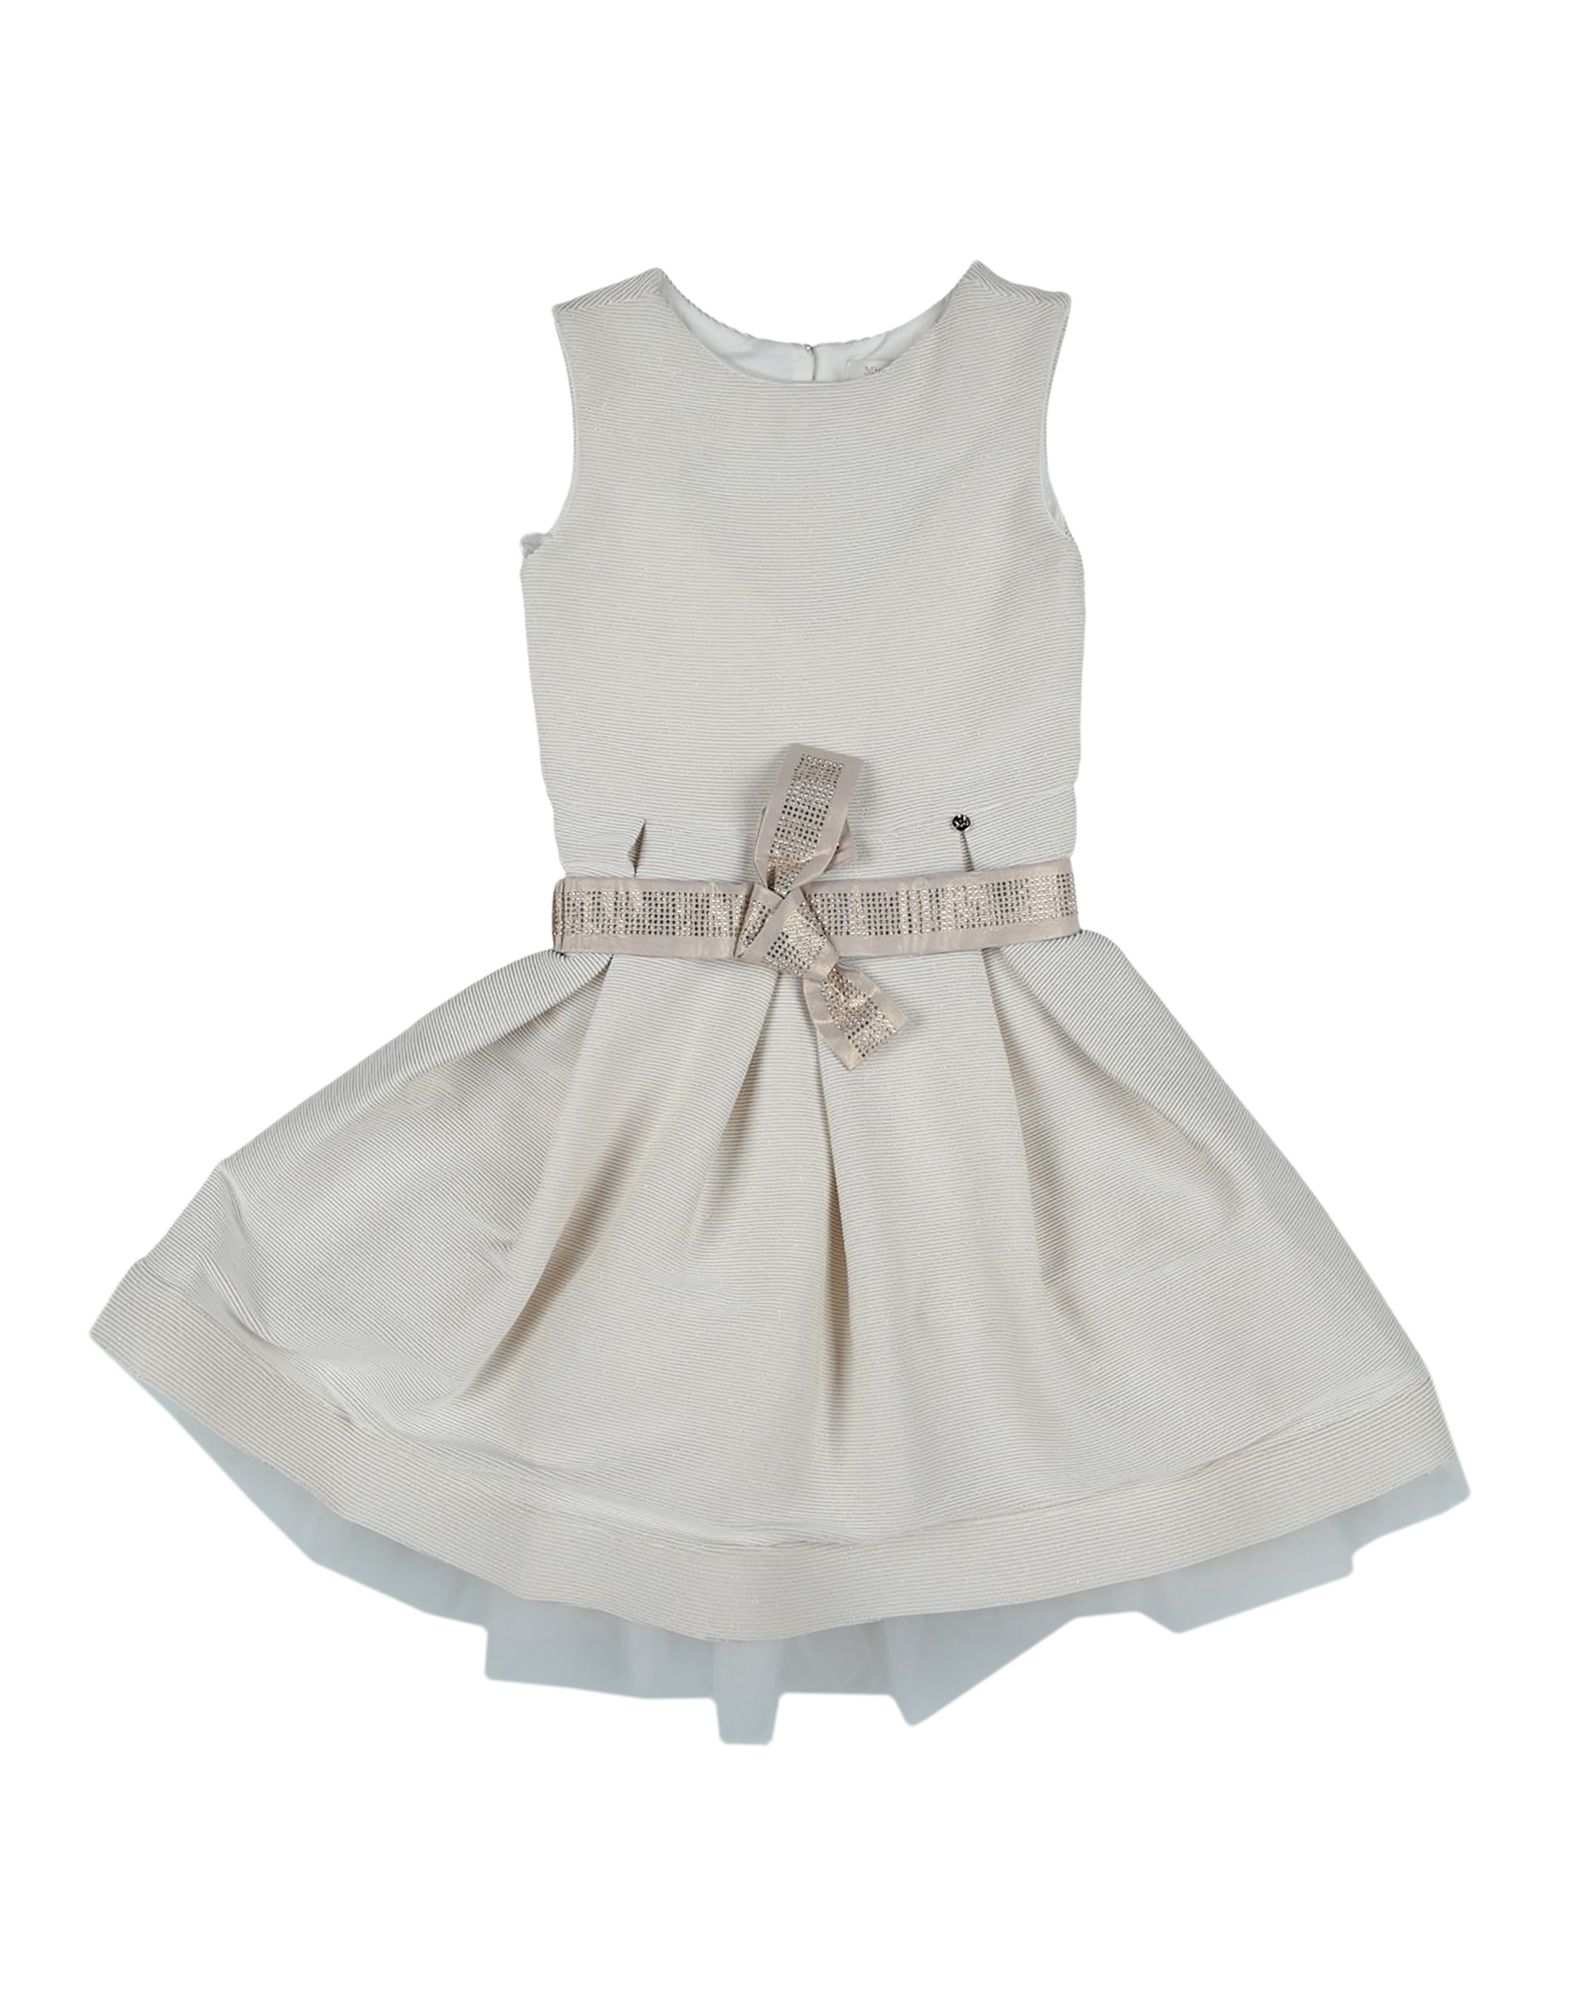 Платье miss. Платье Miss Grant для девочки. Мисс бренд платье. Белые платья для девочек на рост 128-134. Платье Miss blush.